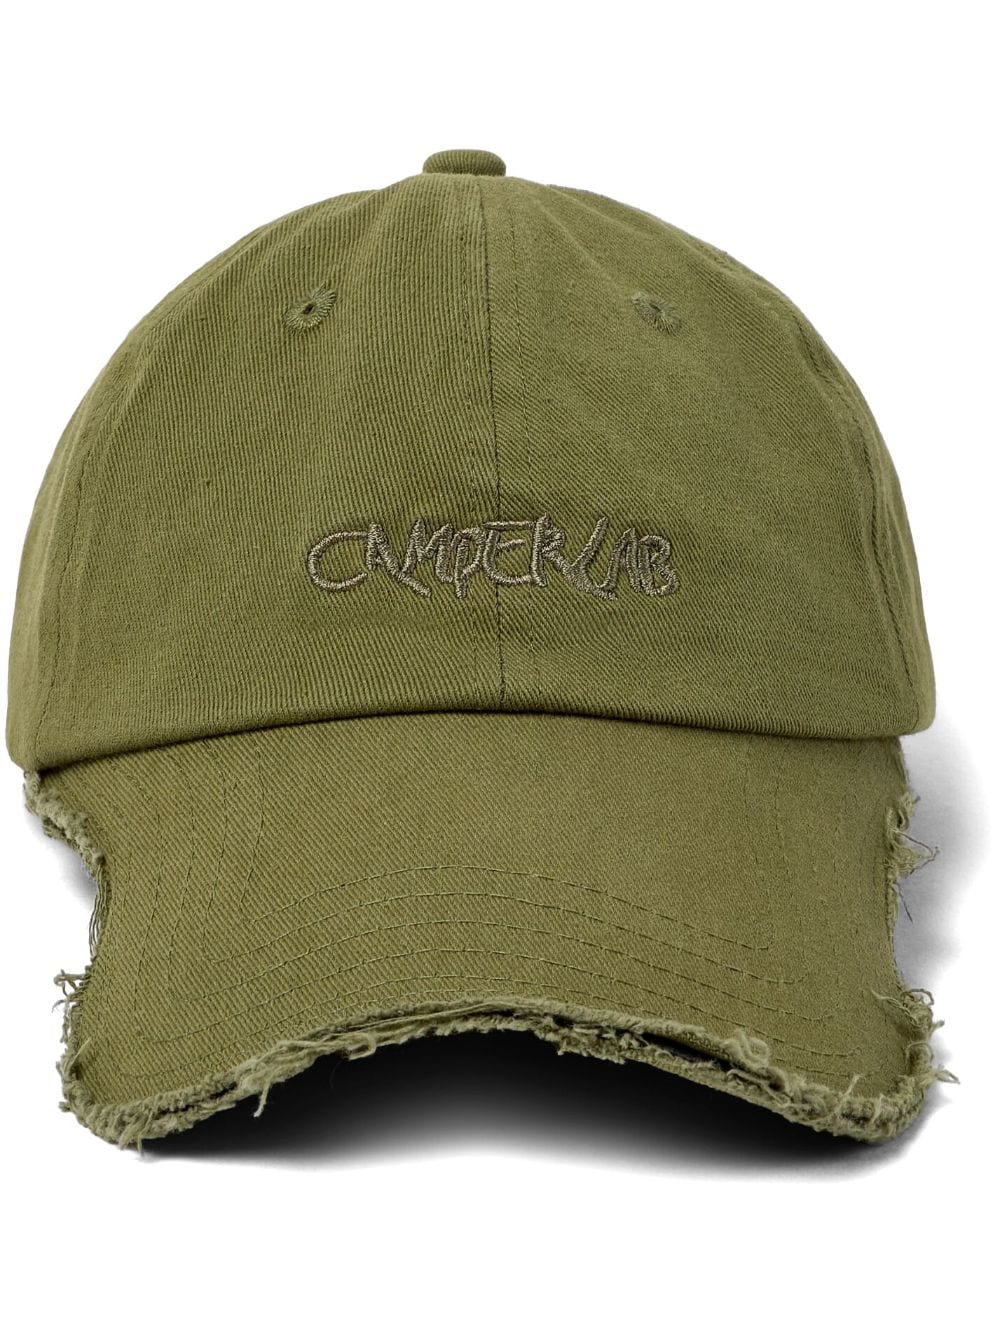 camperlab casquette à logo brodé - vert